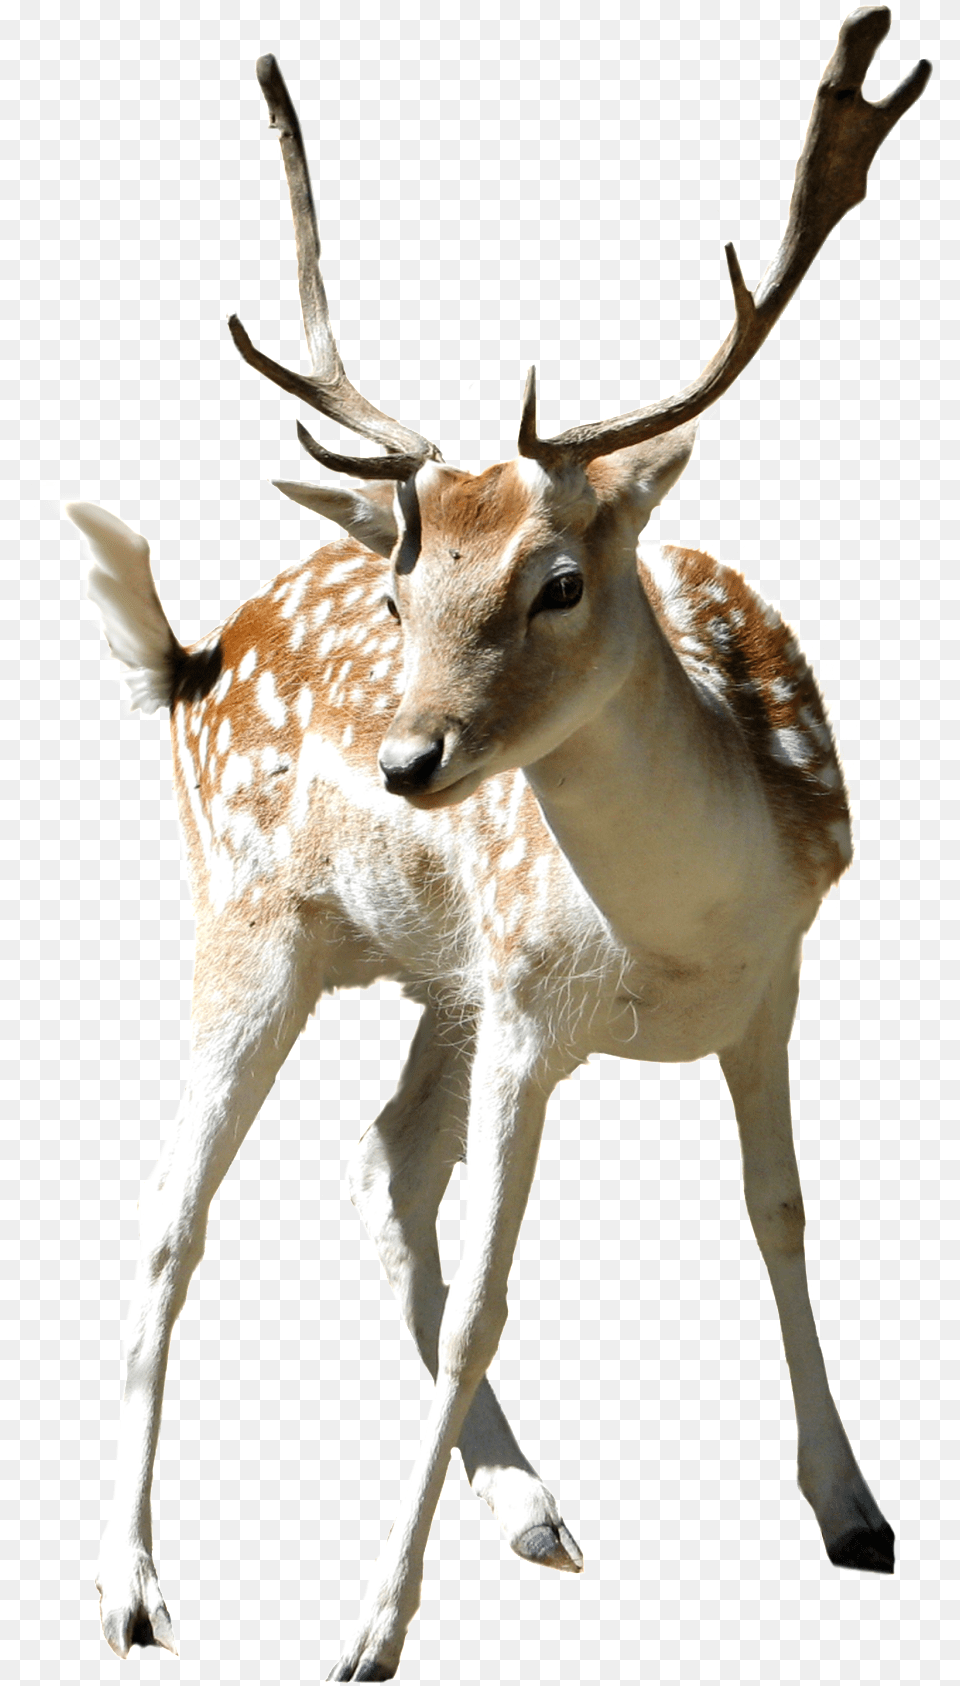 This Product Design Is Zoo Sika Deer Cartoon Deers, Animal, Antelope, Mammal, Wildlife Png